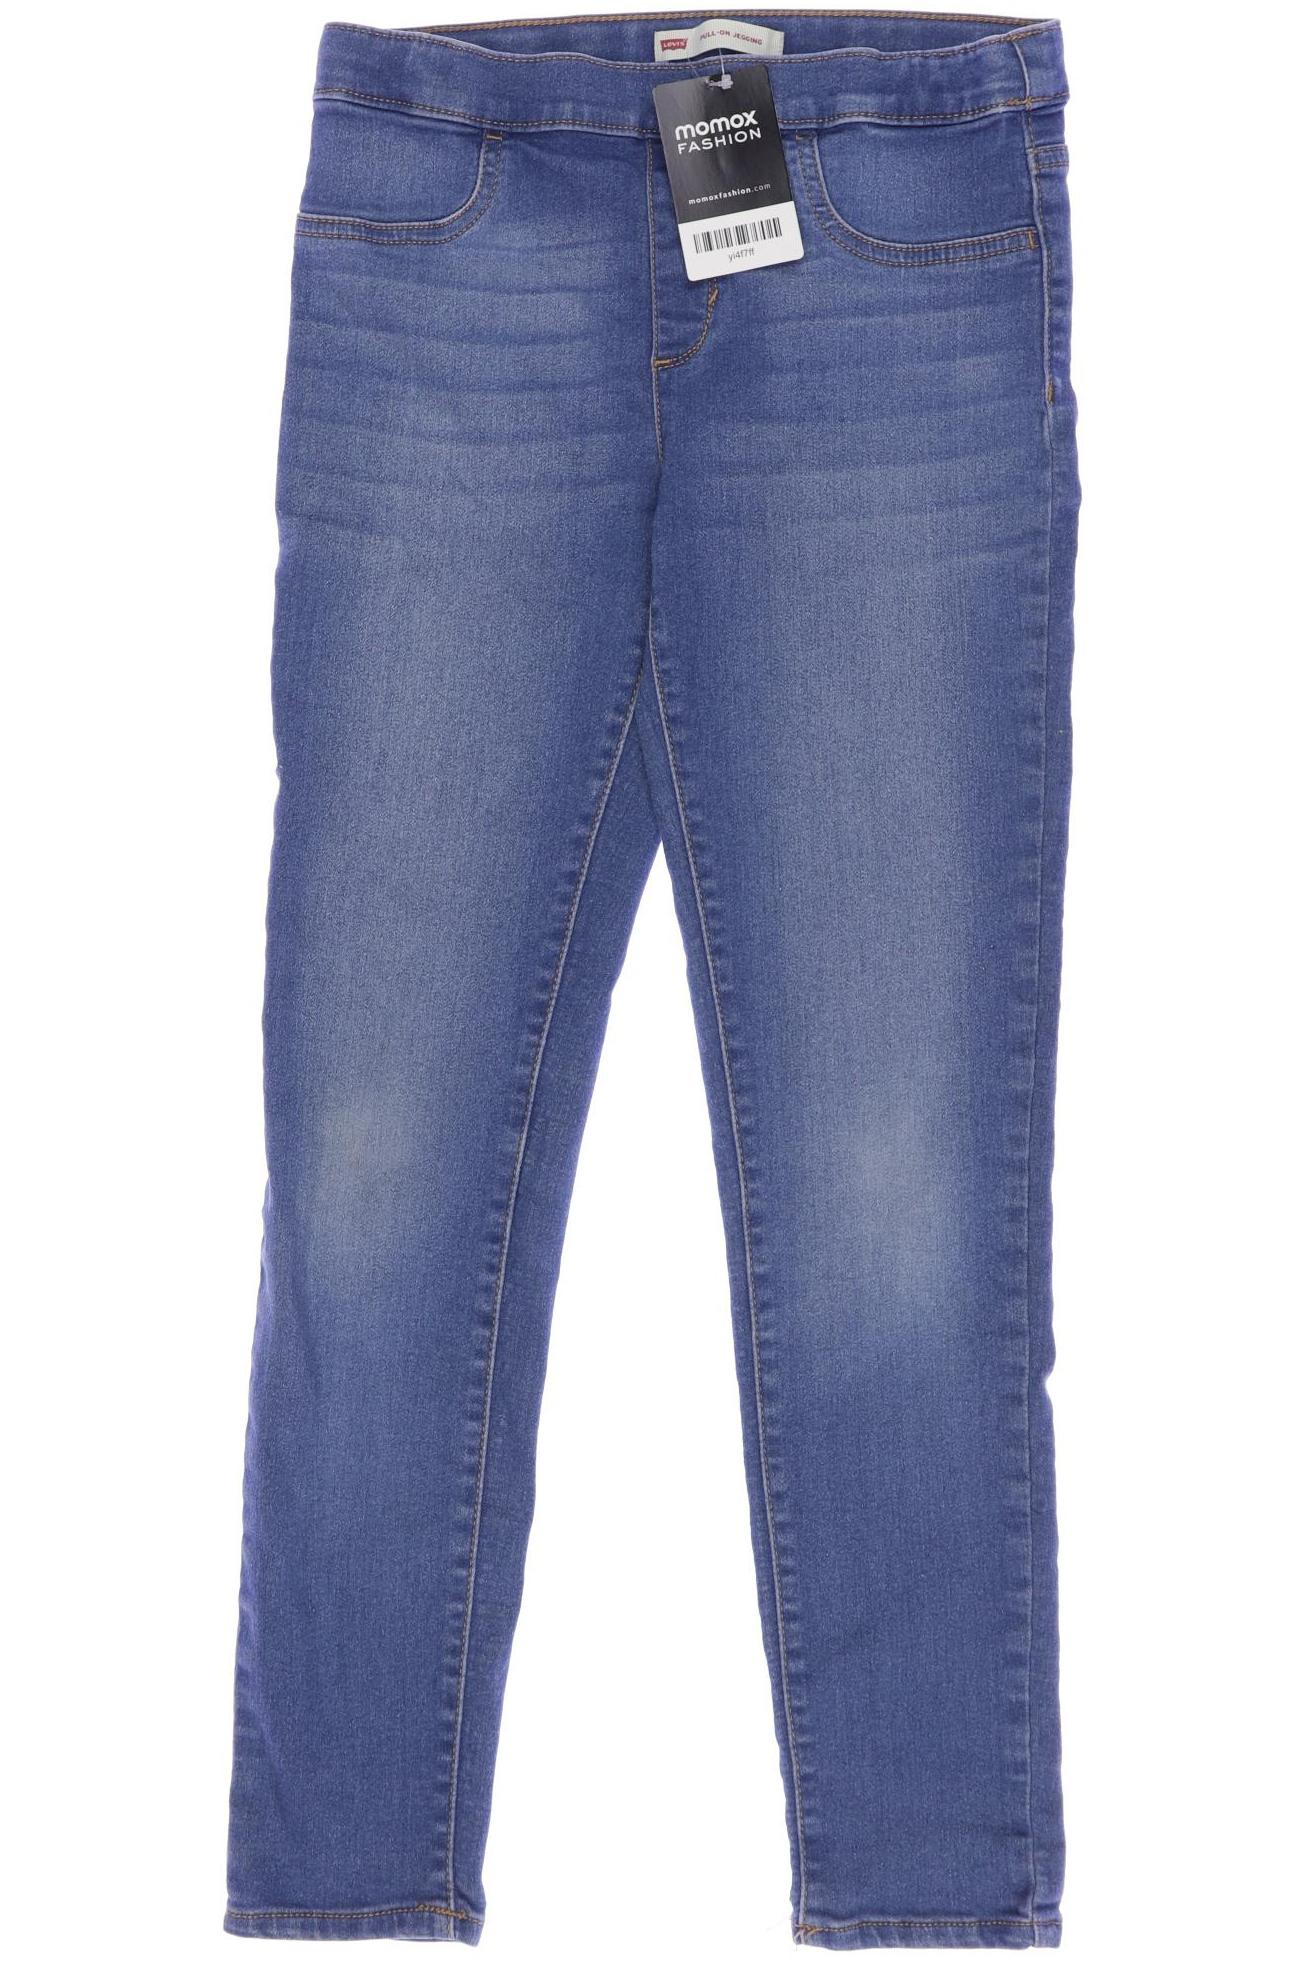 Levis Damen Jeans, blau, Gr. 152 von Levis